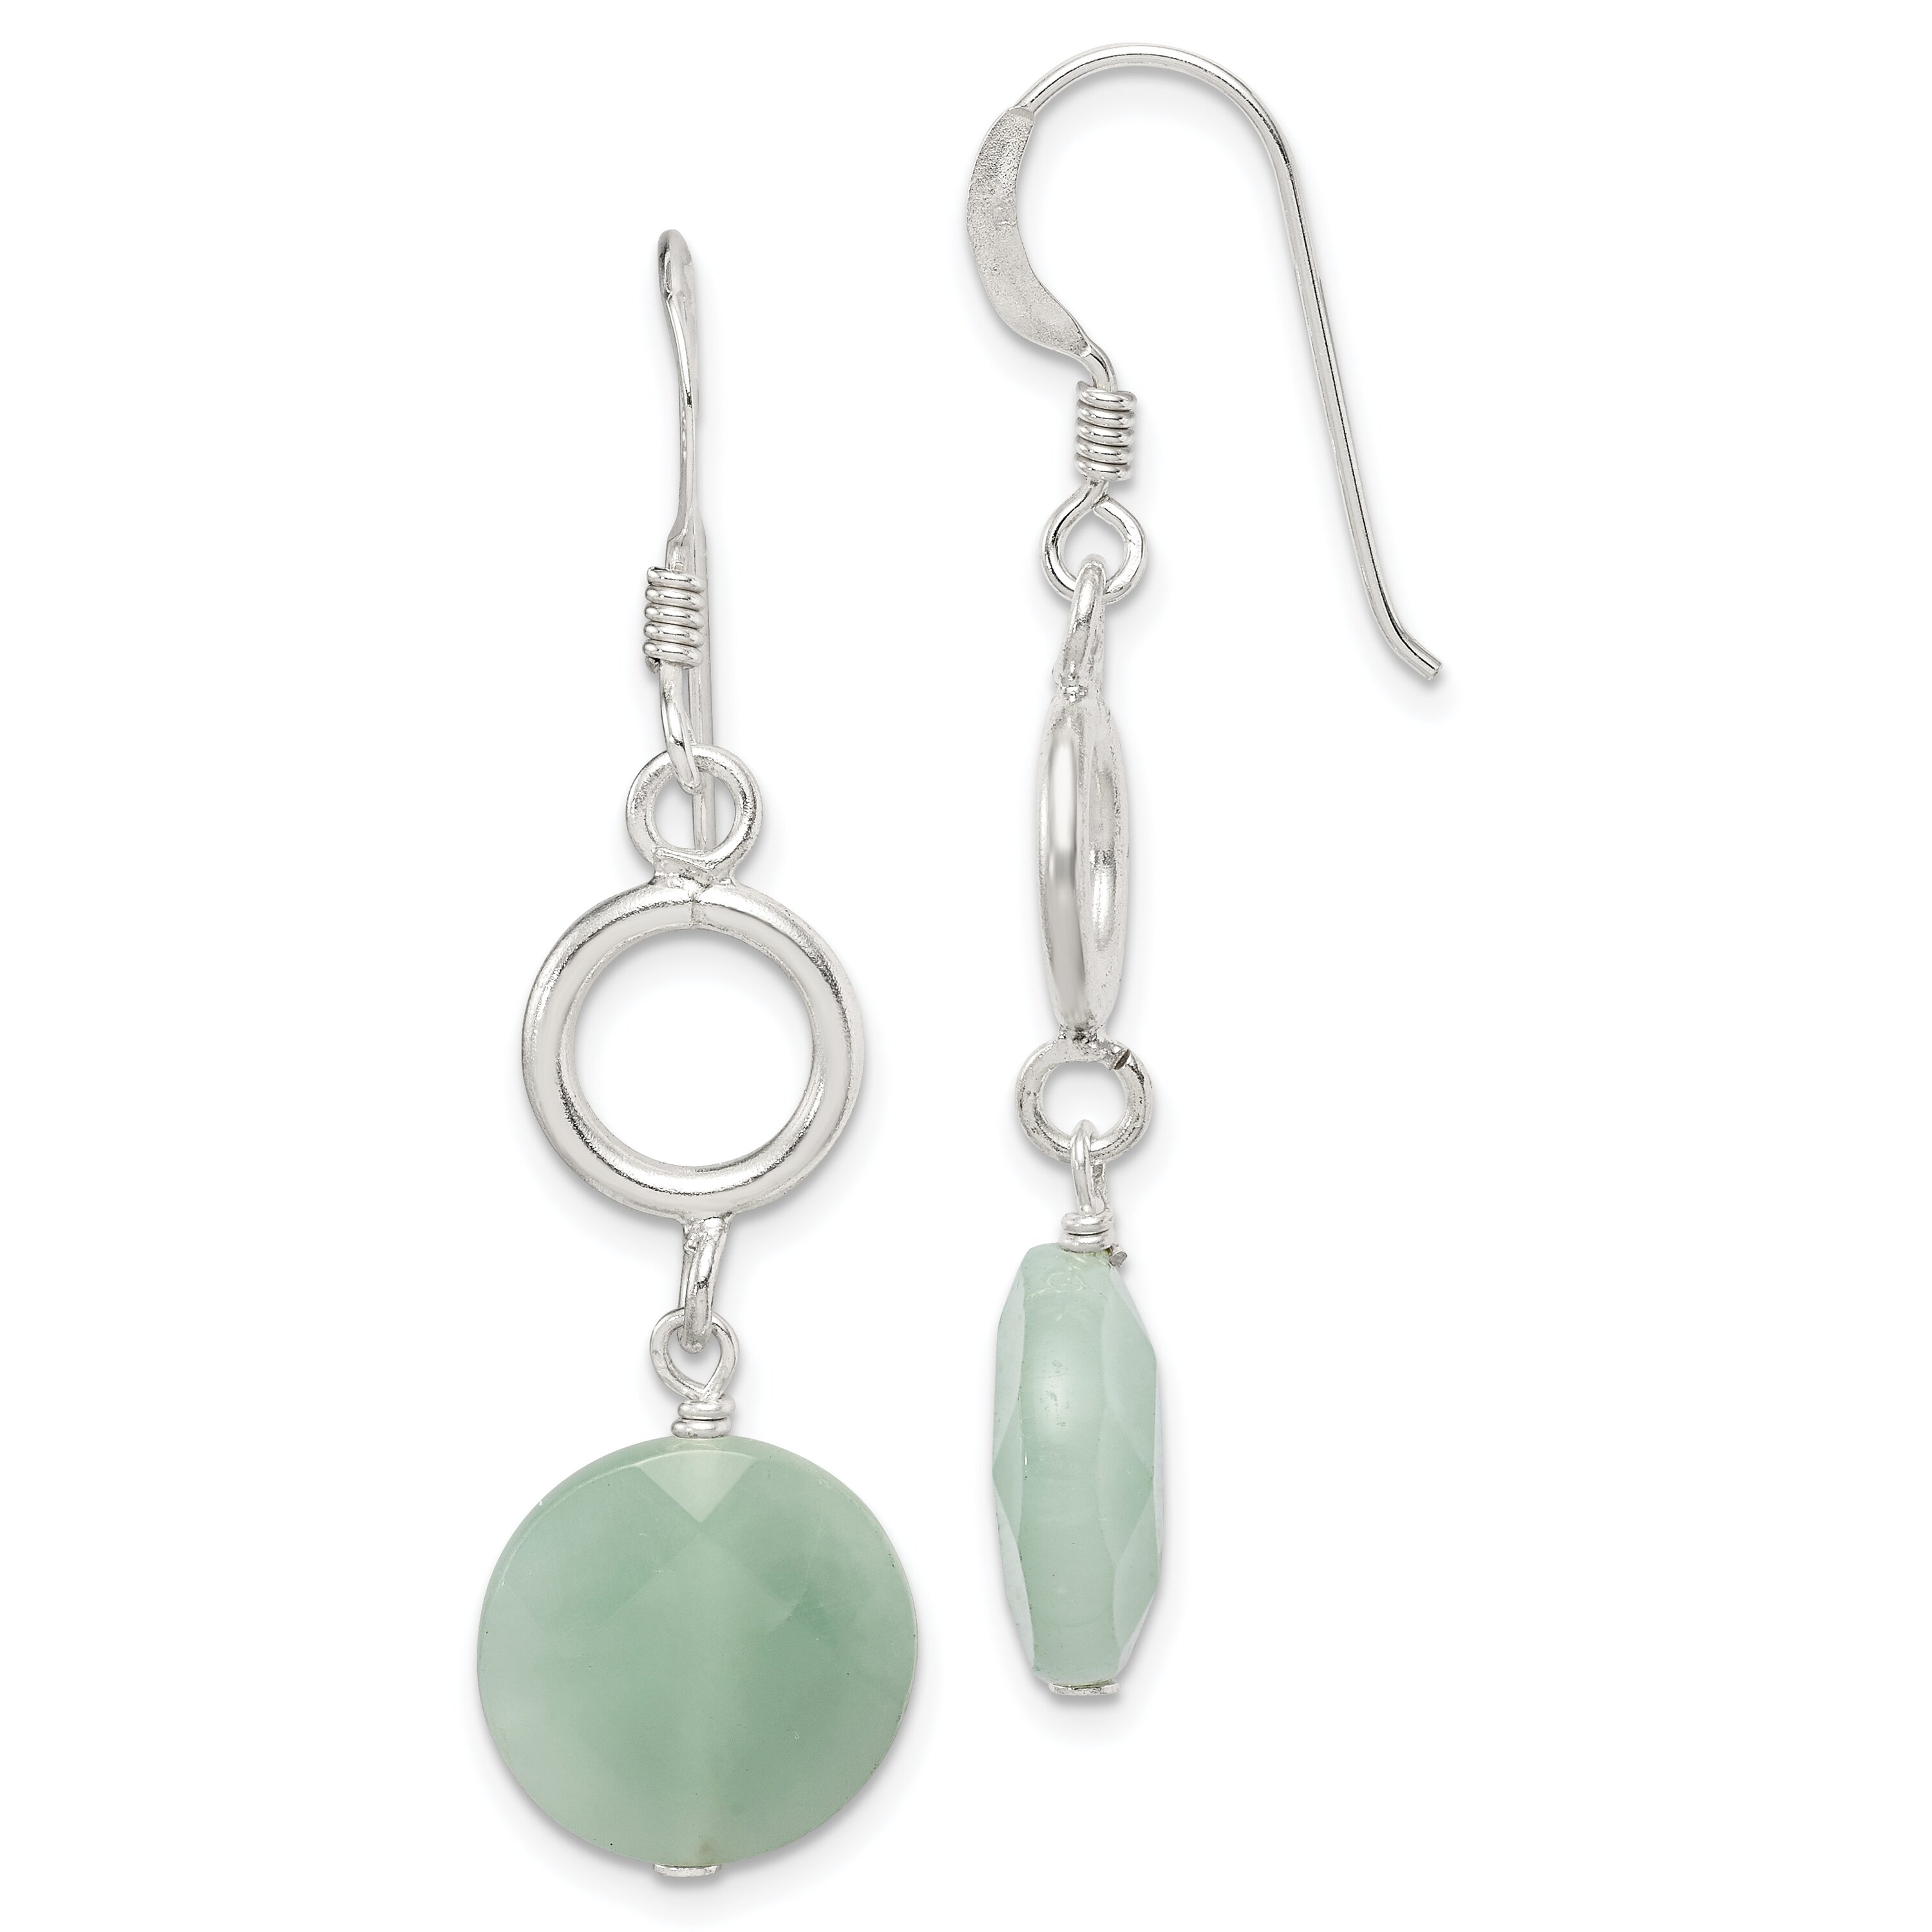 Findingking Sterling Silver Green Jade Dangle Earrings Jewelry